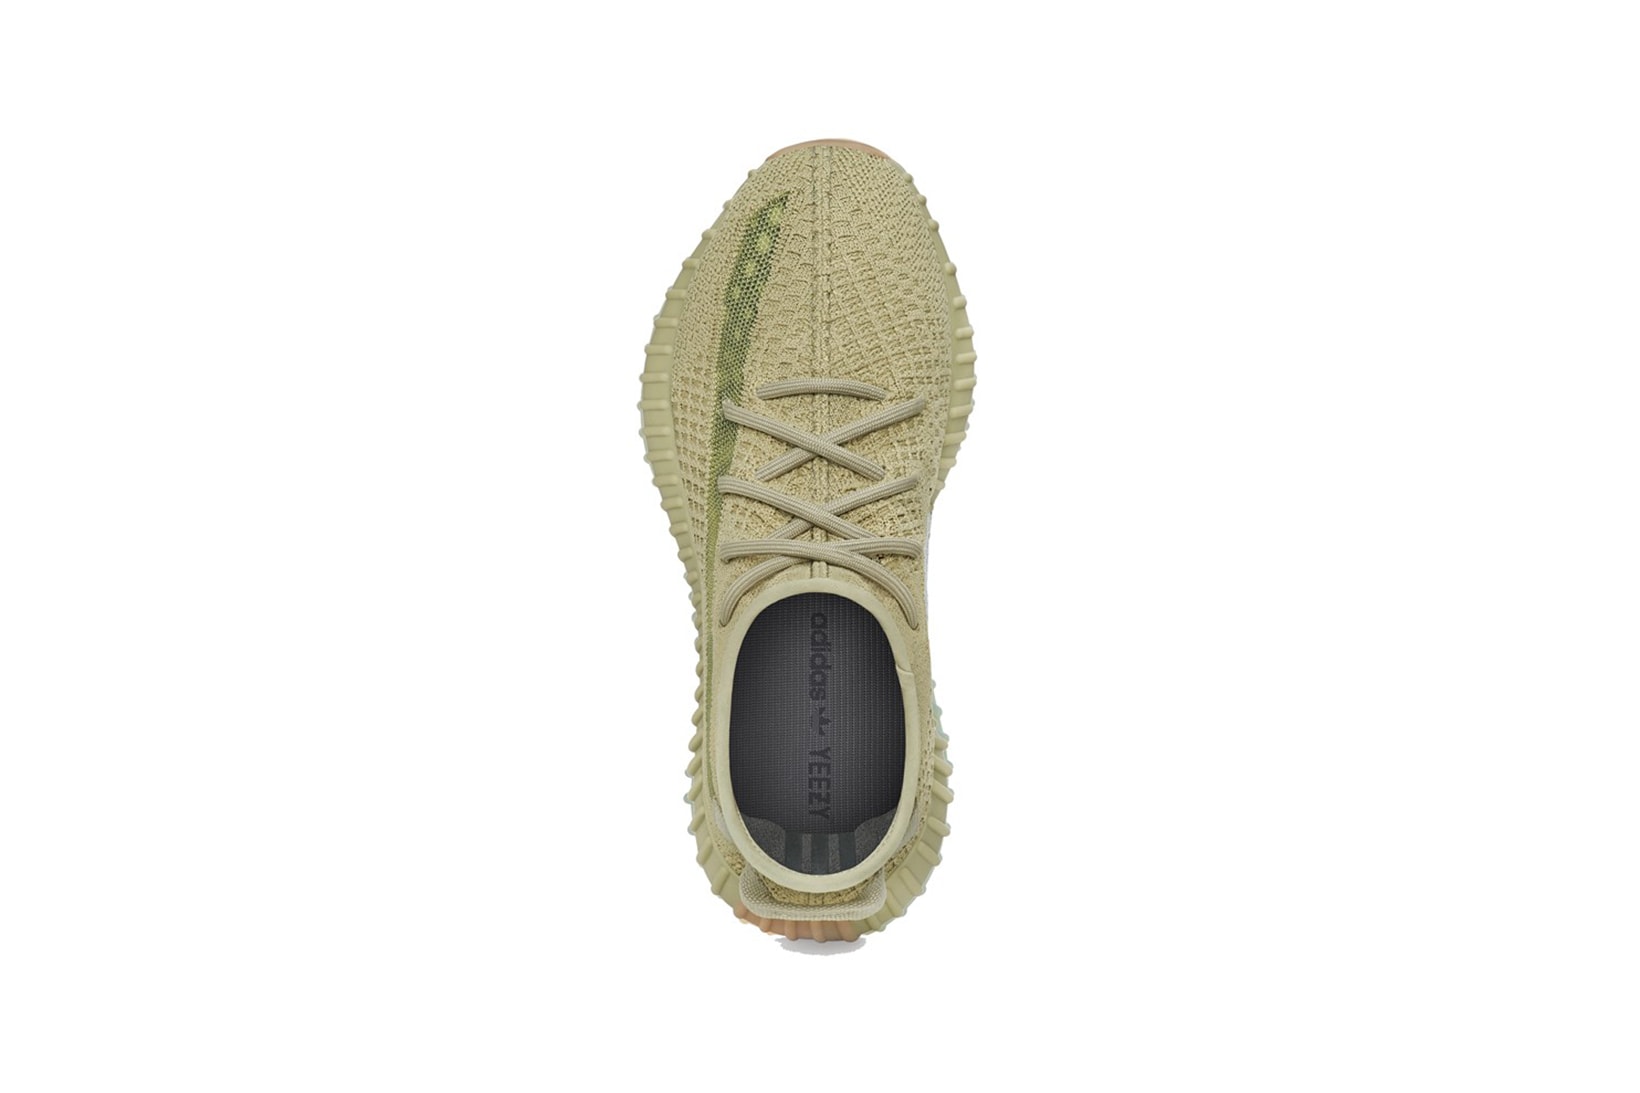 adidas kanye west yeezy boost 350 v2 sulfur sneakers olive green colorway sneakerhead shoes footwear